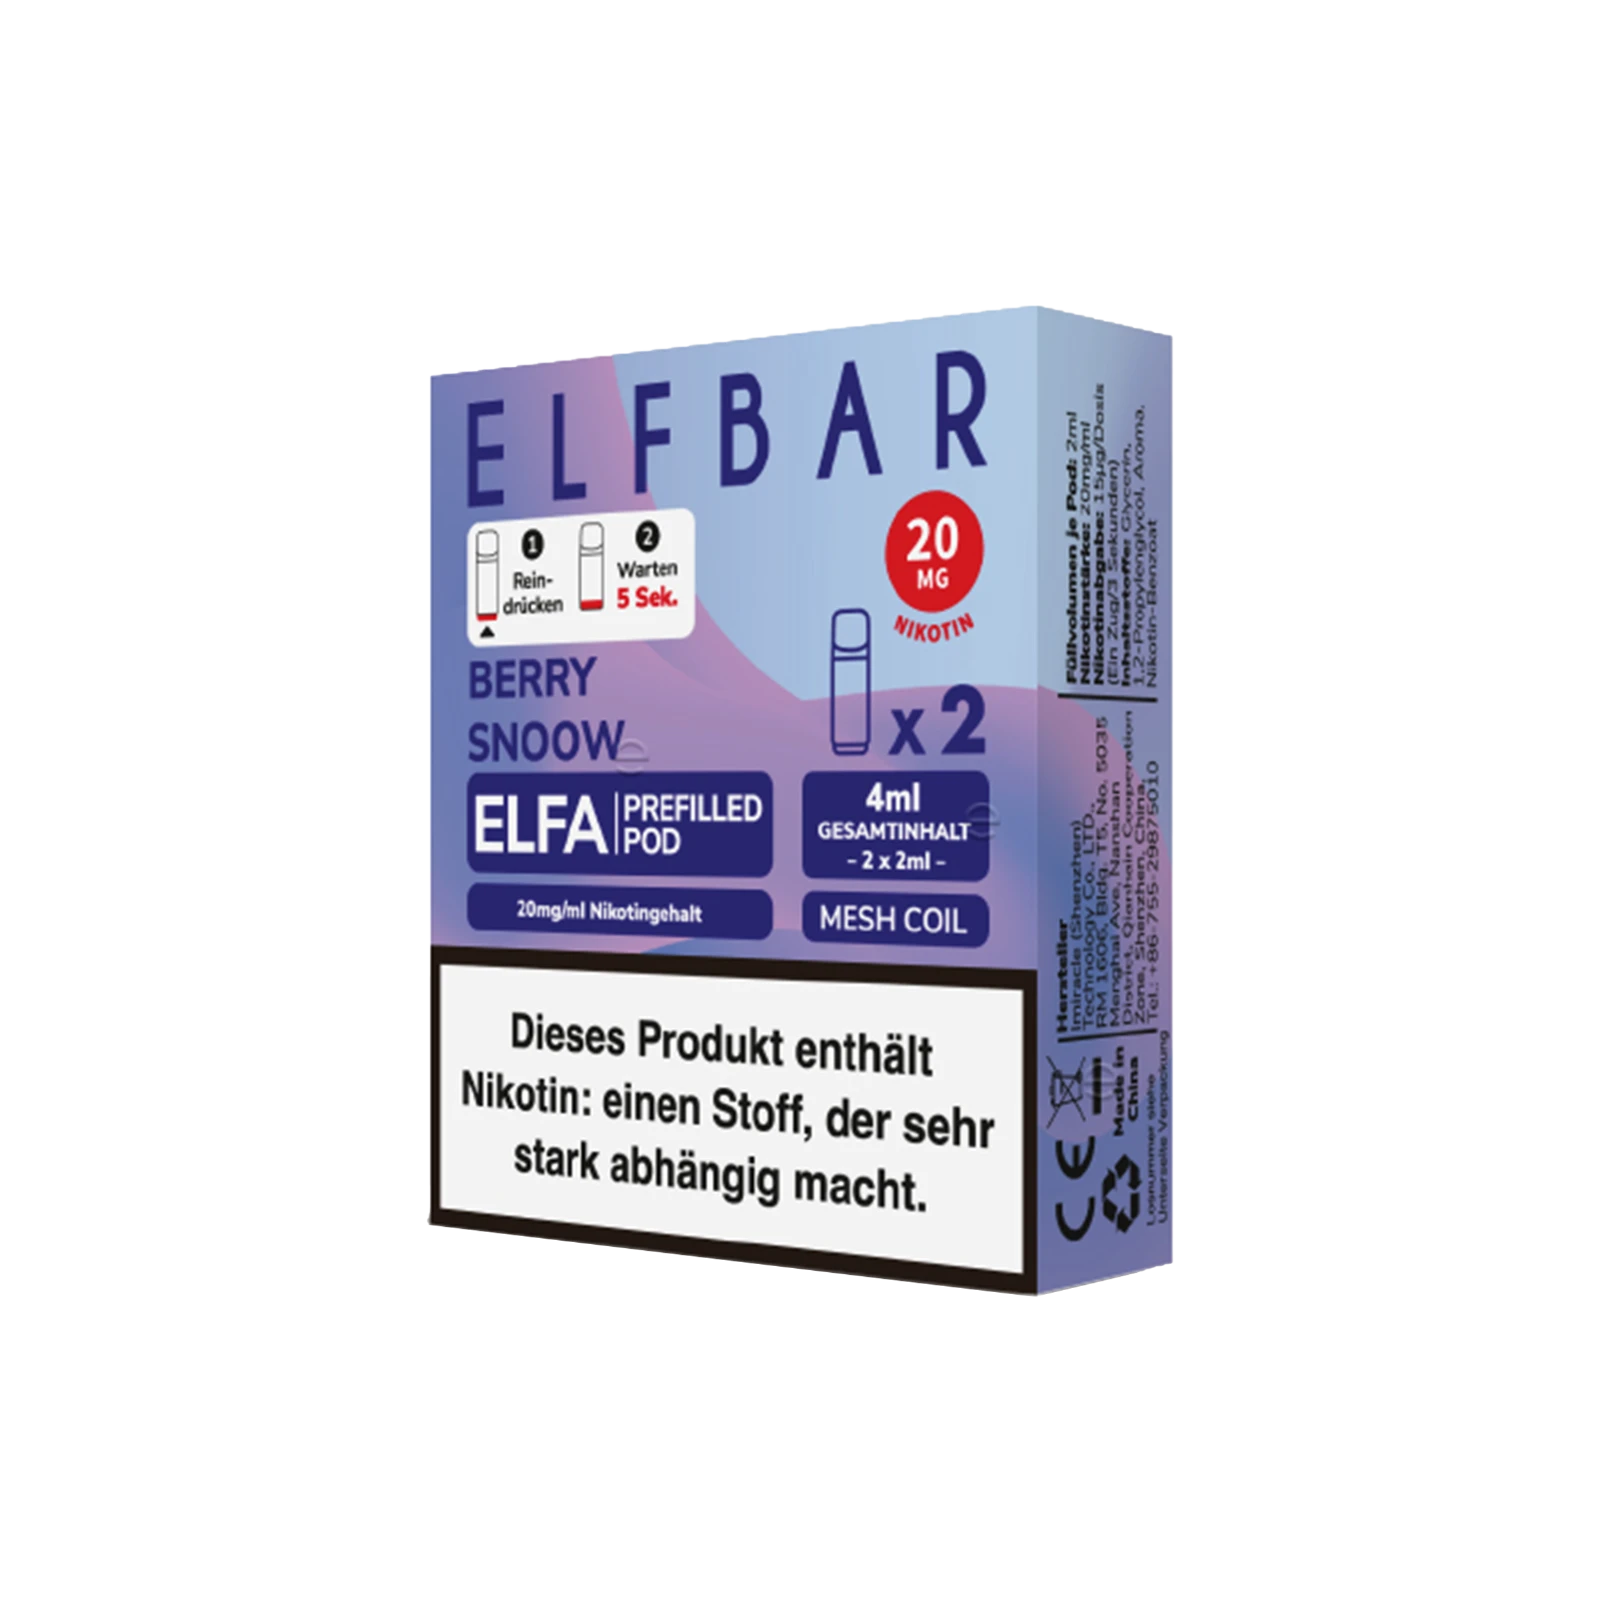 Elf Bar ELFA CP Prefilled Pod Berry Jam | Neue Liquid Sorten1